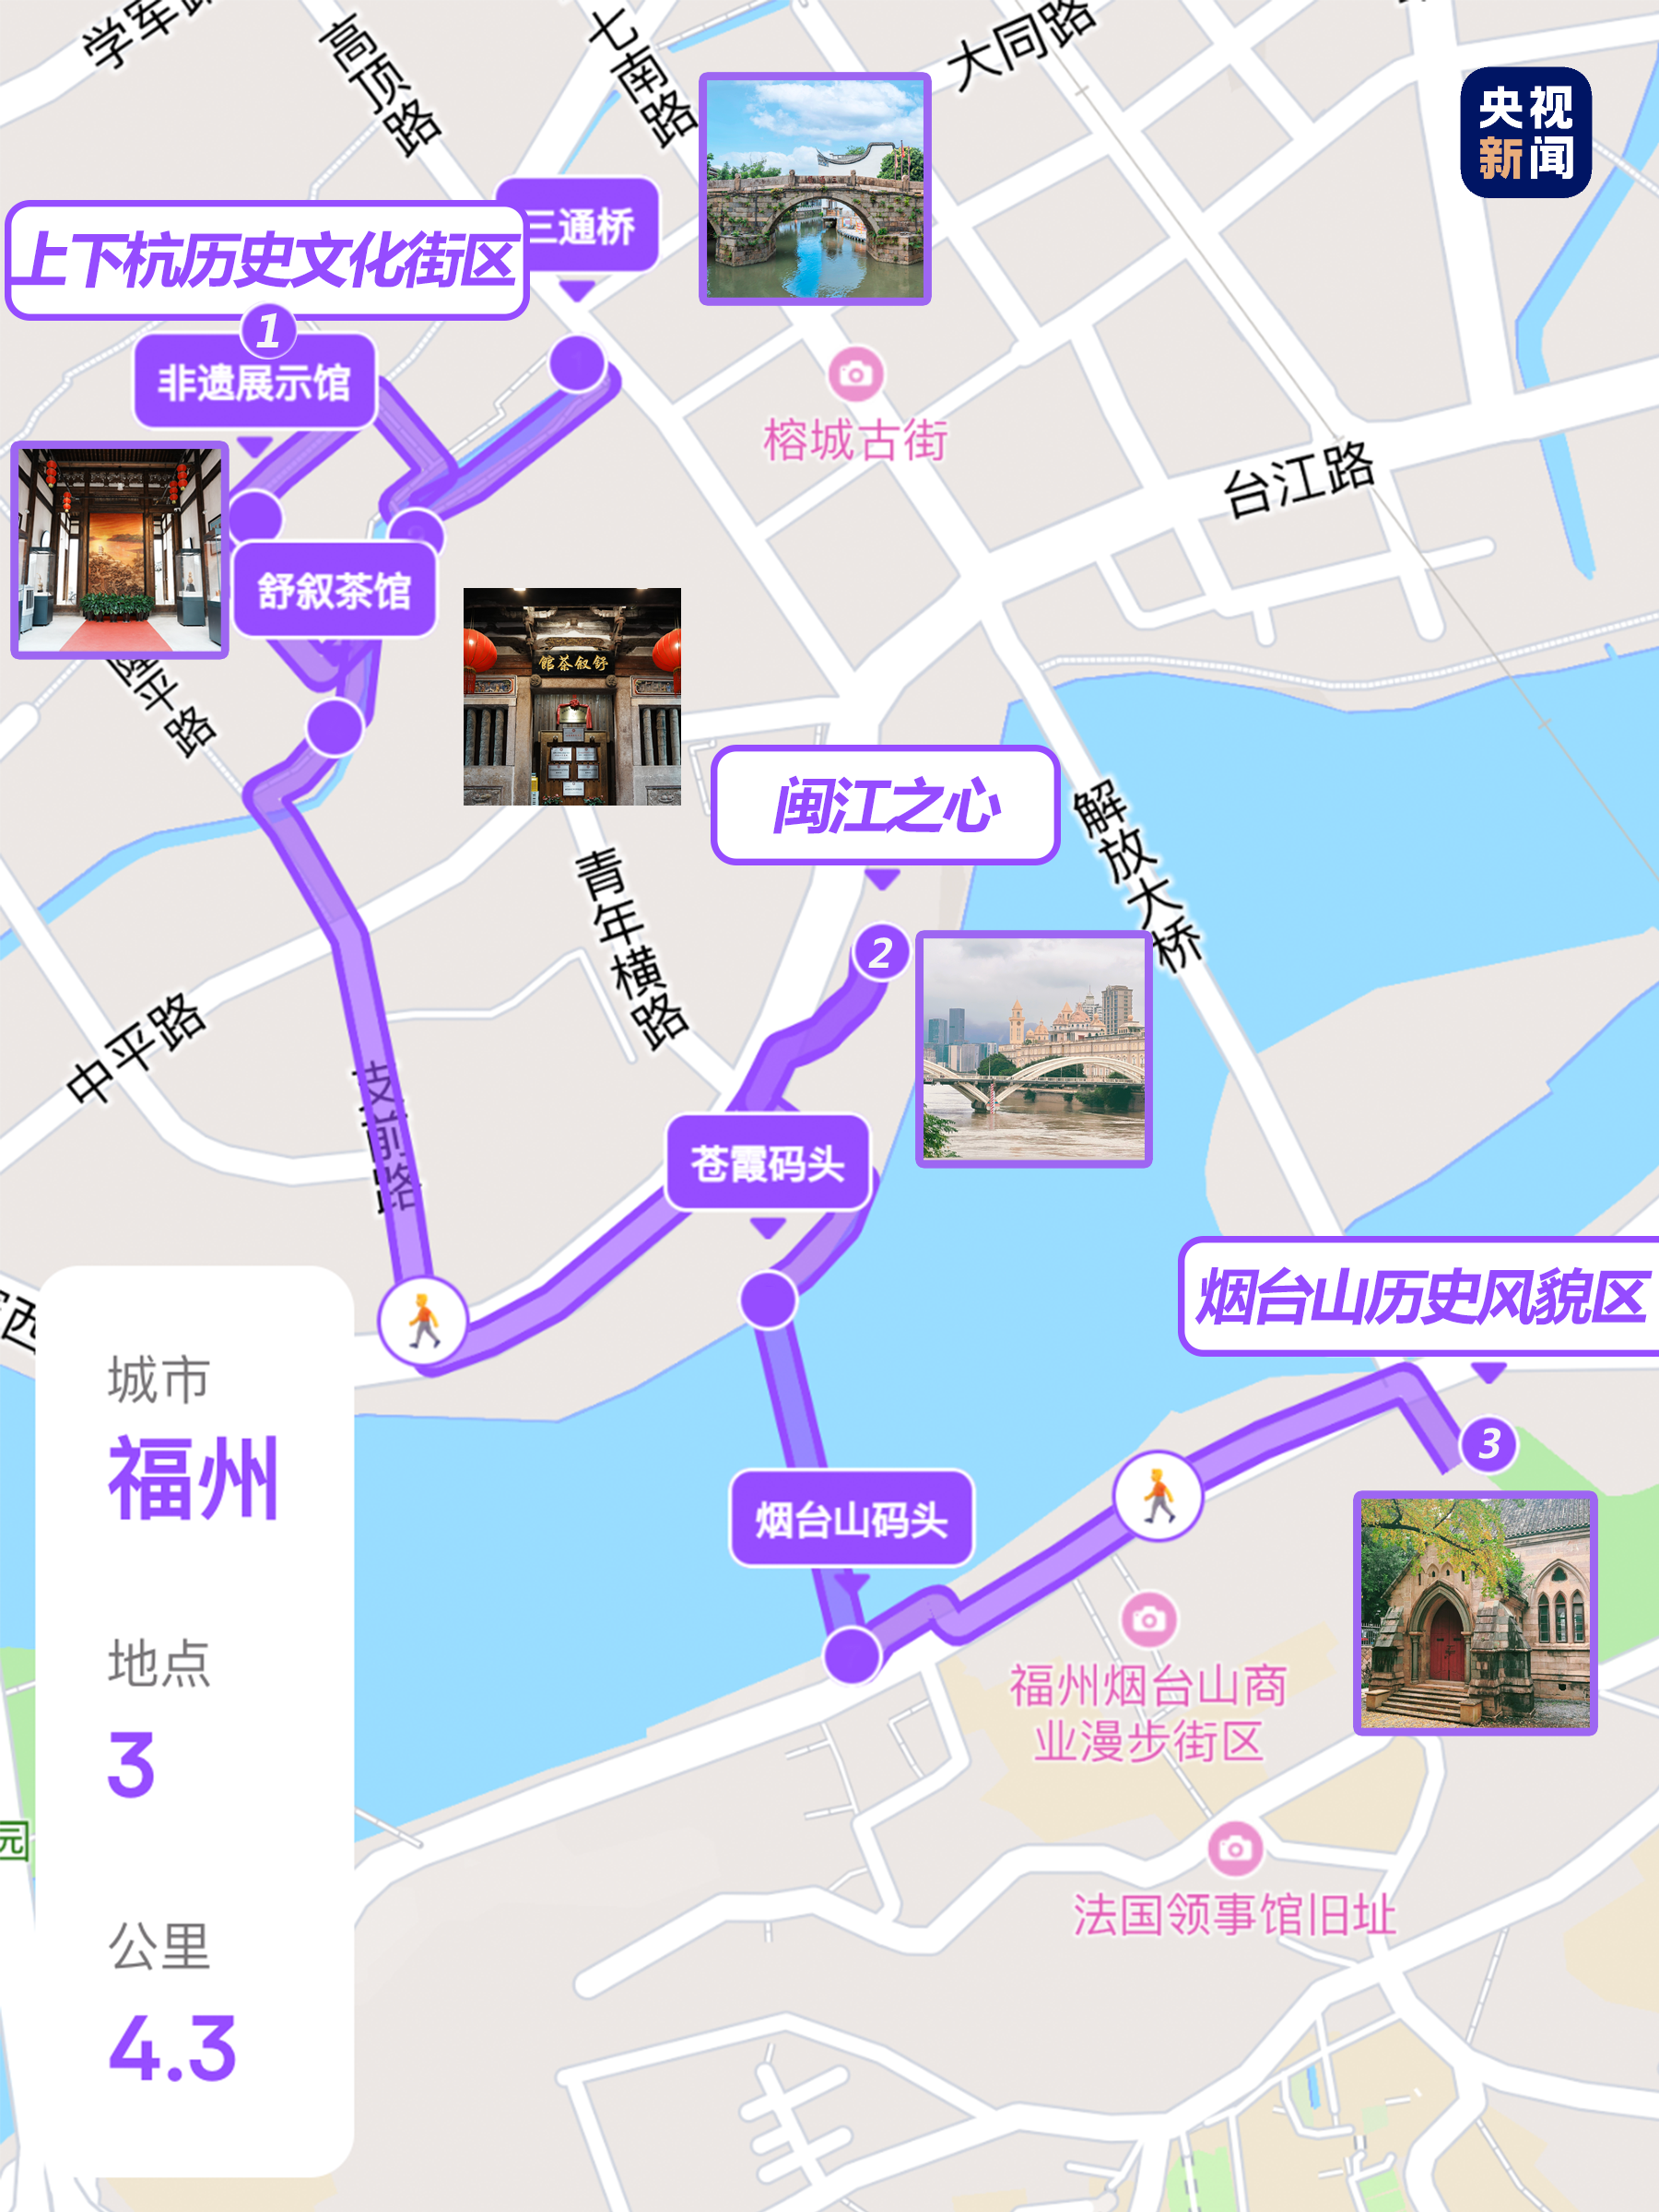 福州Citywalk｜推荐一条文艺的古厝walk路线